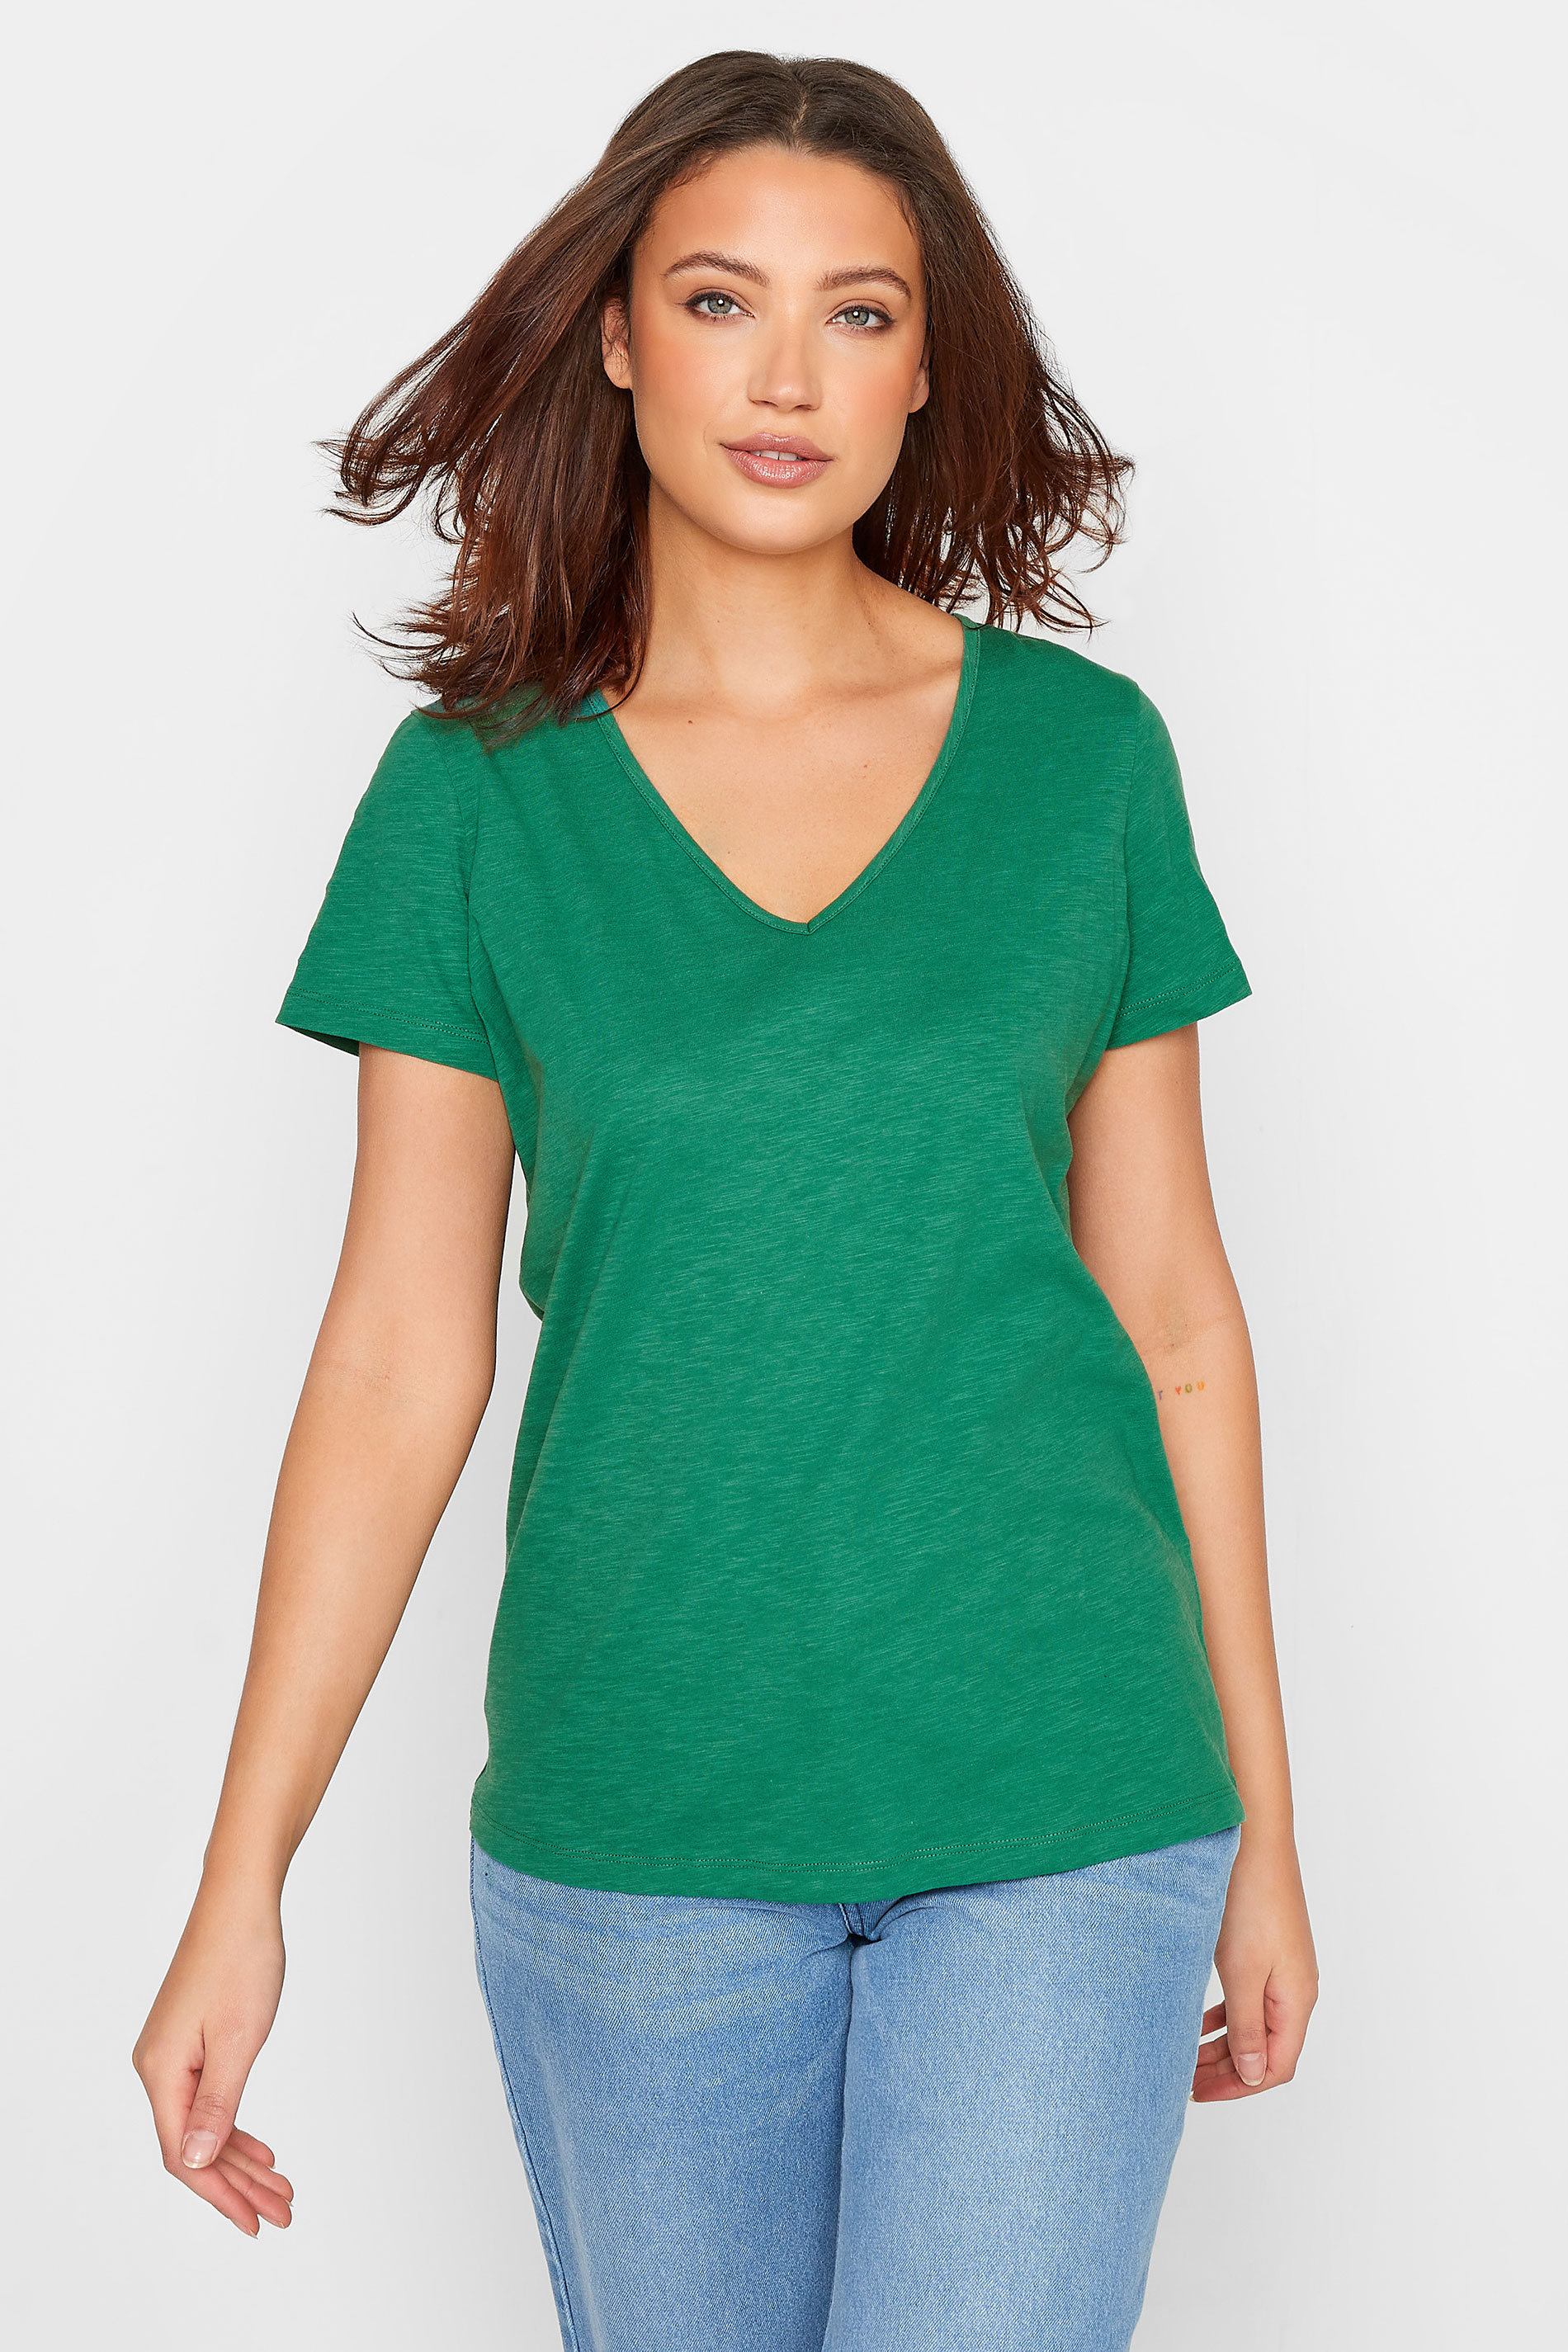 LTS Tall Women's Green Short Sleeve Cotton T-Shirt | Long Tall Sally  1